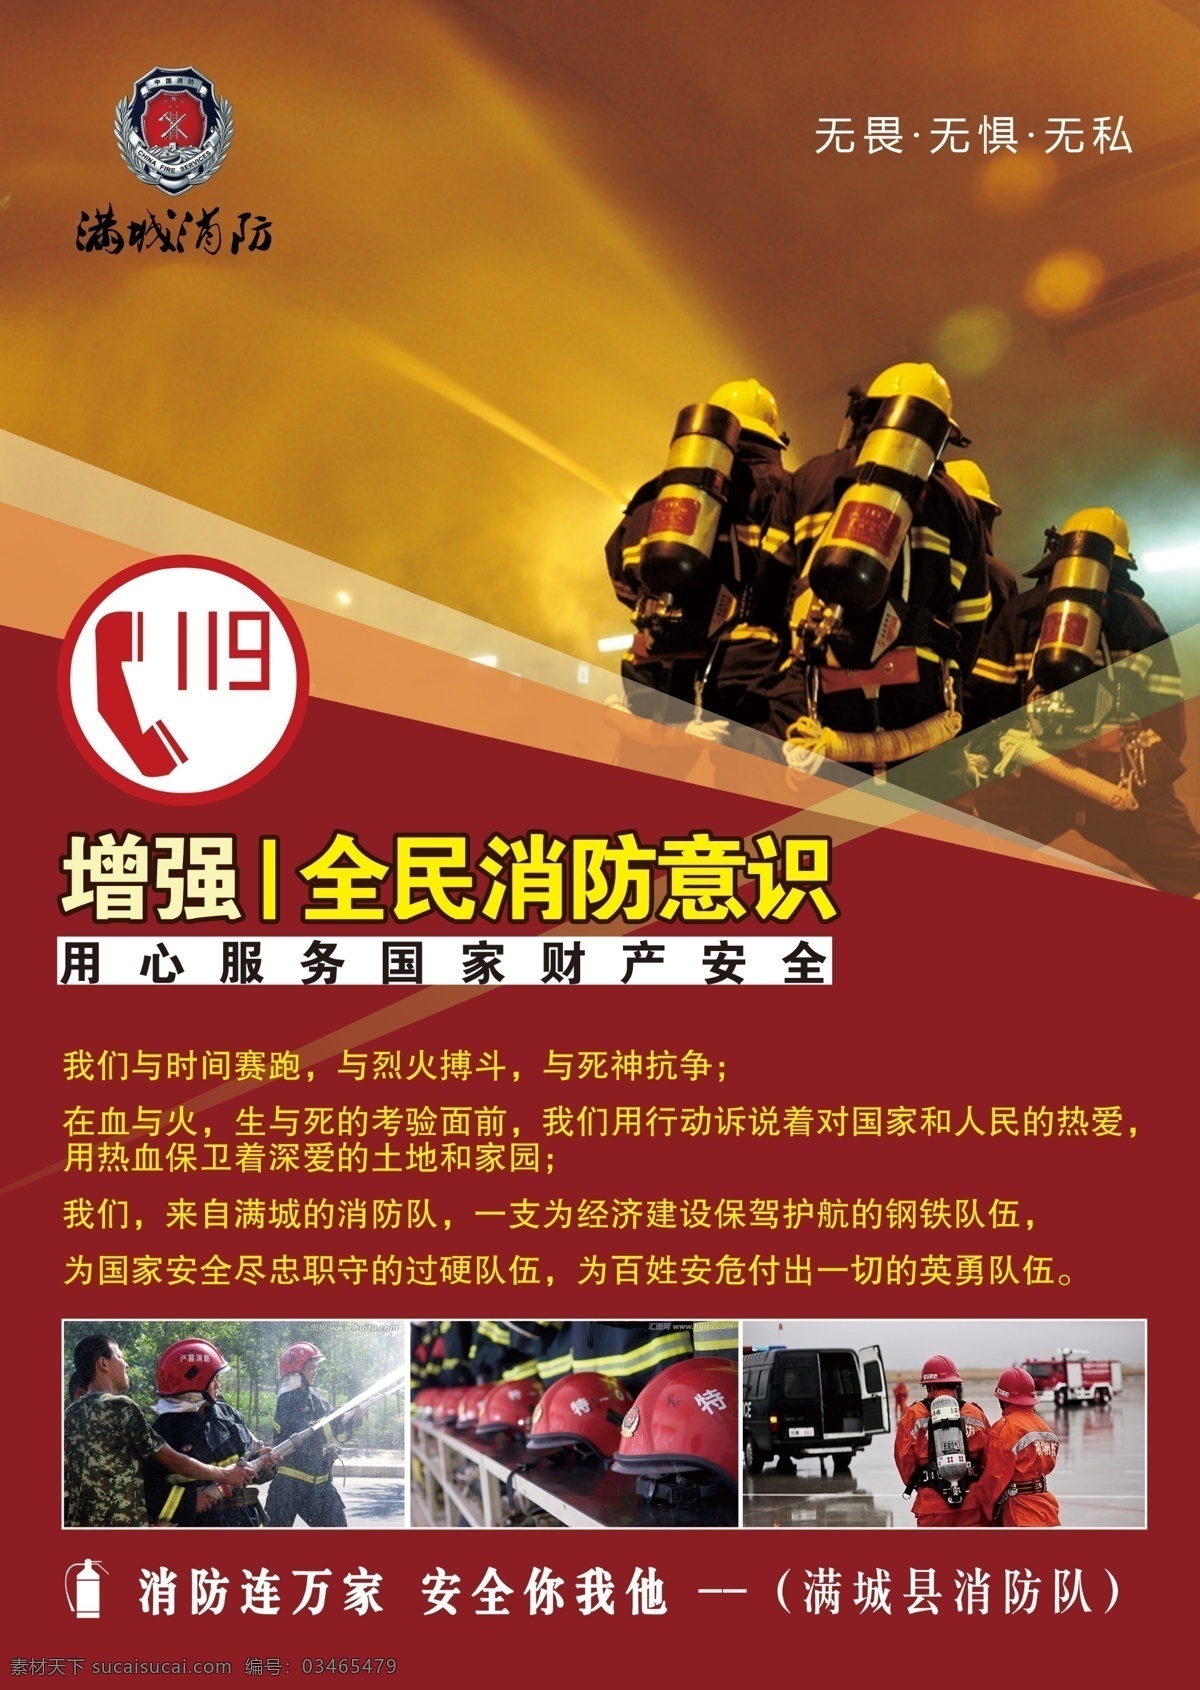 保定 消防 宣传单 灭火器 消防队 dm单 彩页 宣传画册 招贴设计 红色